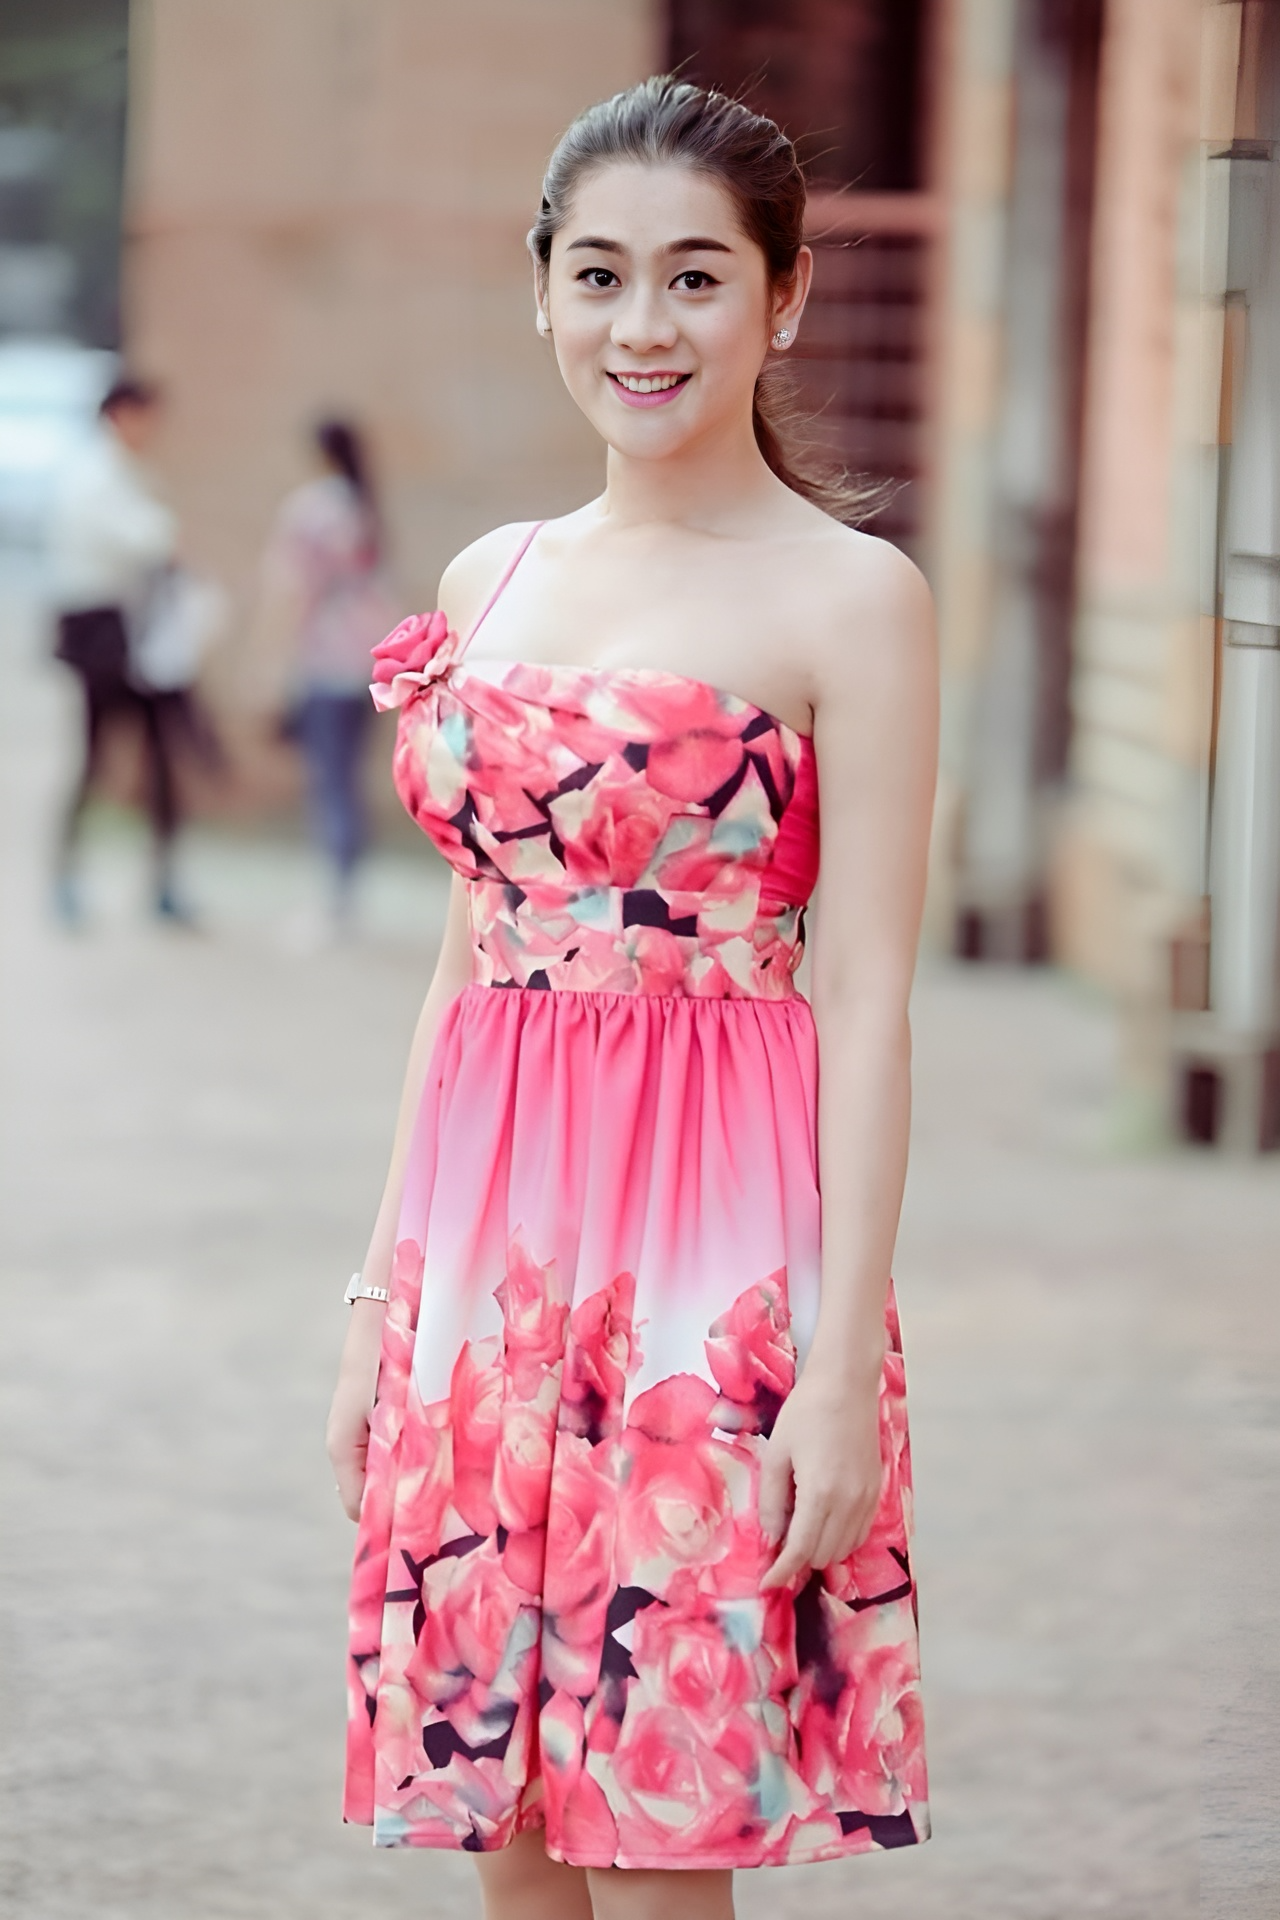 Từ khi công khai chuyển giới năm 2012, Lâm Khánh Chitrở thành một trong những nhân vật giải trí thu hút sự quan tâm của khán giả. Cô cũng tự nhận mình là công chúa.